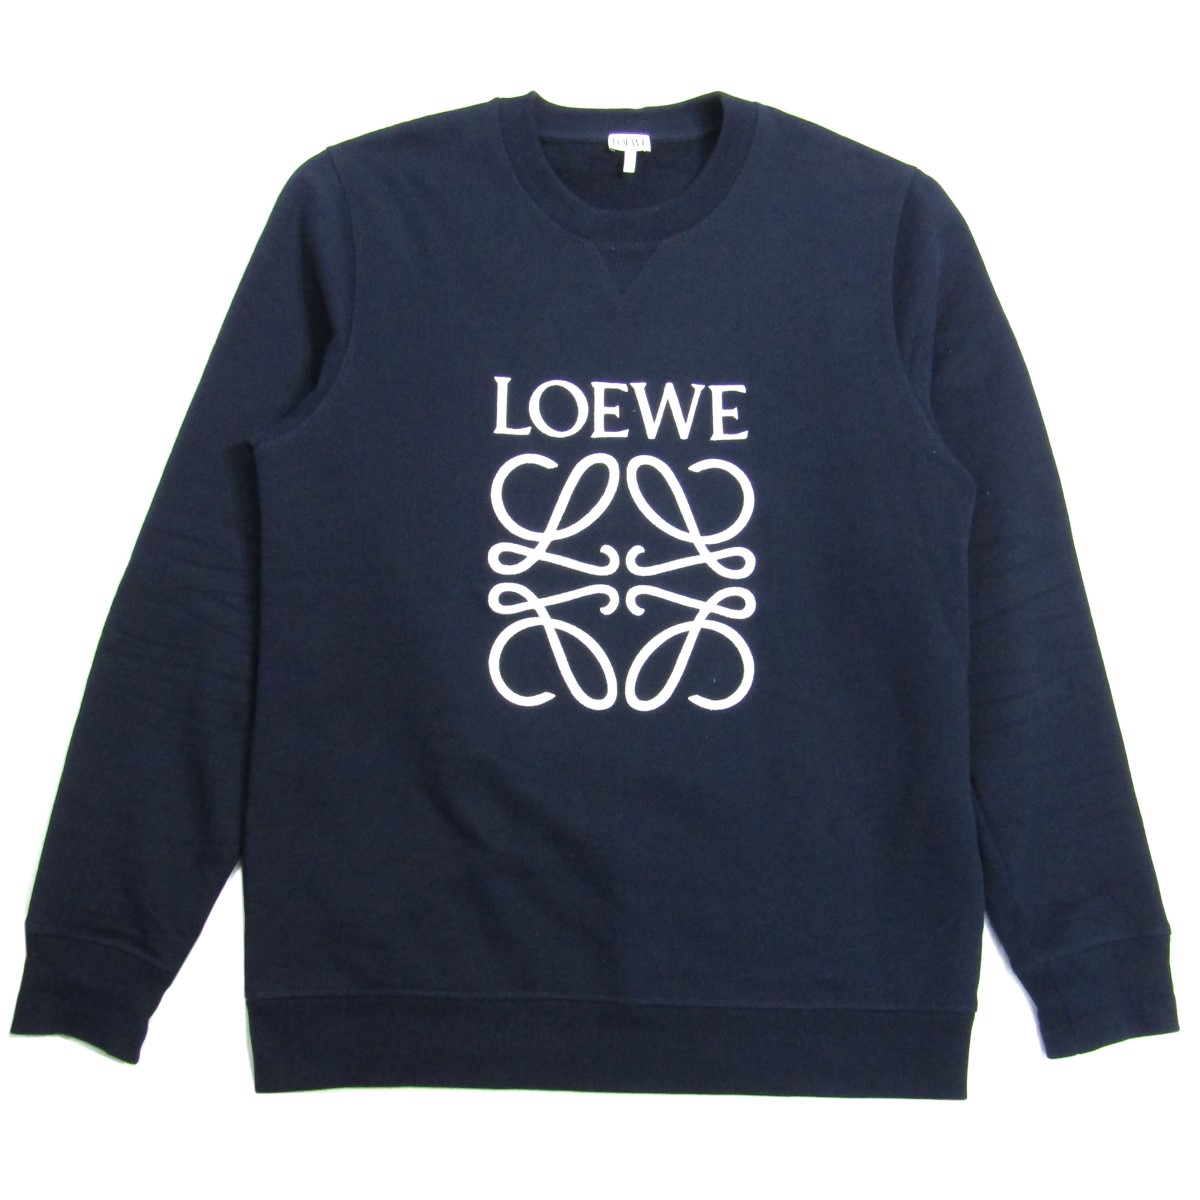 ロエベ 中古 Loewe Anagram Embroidered Sweatshirt ネイビー サイズ L スウェットトレーナー お歳暮 アナグラム